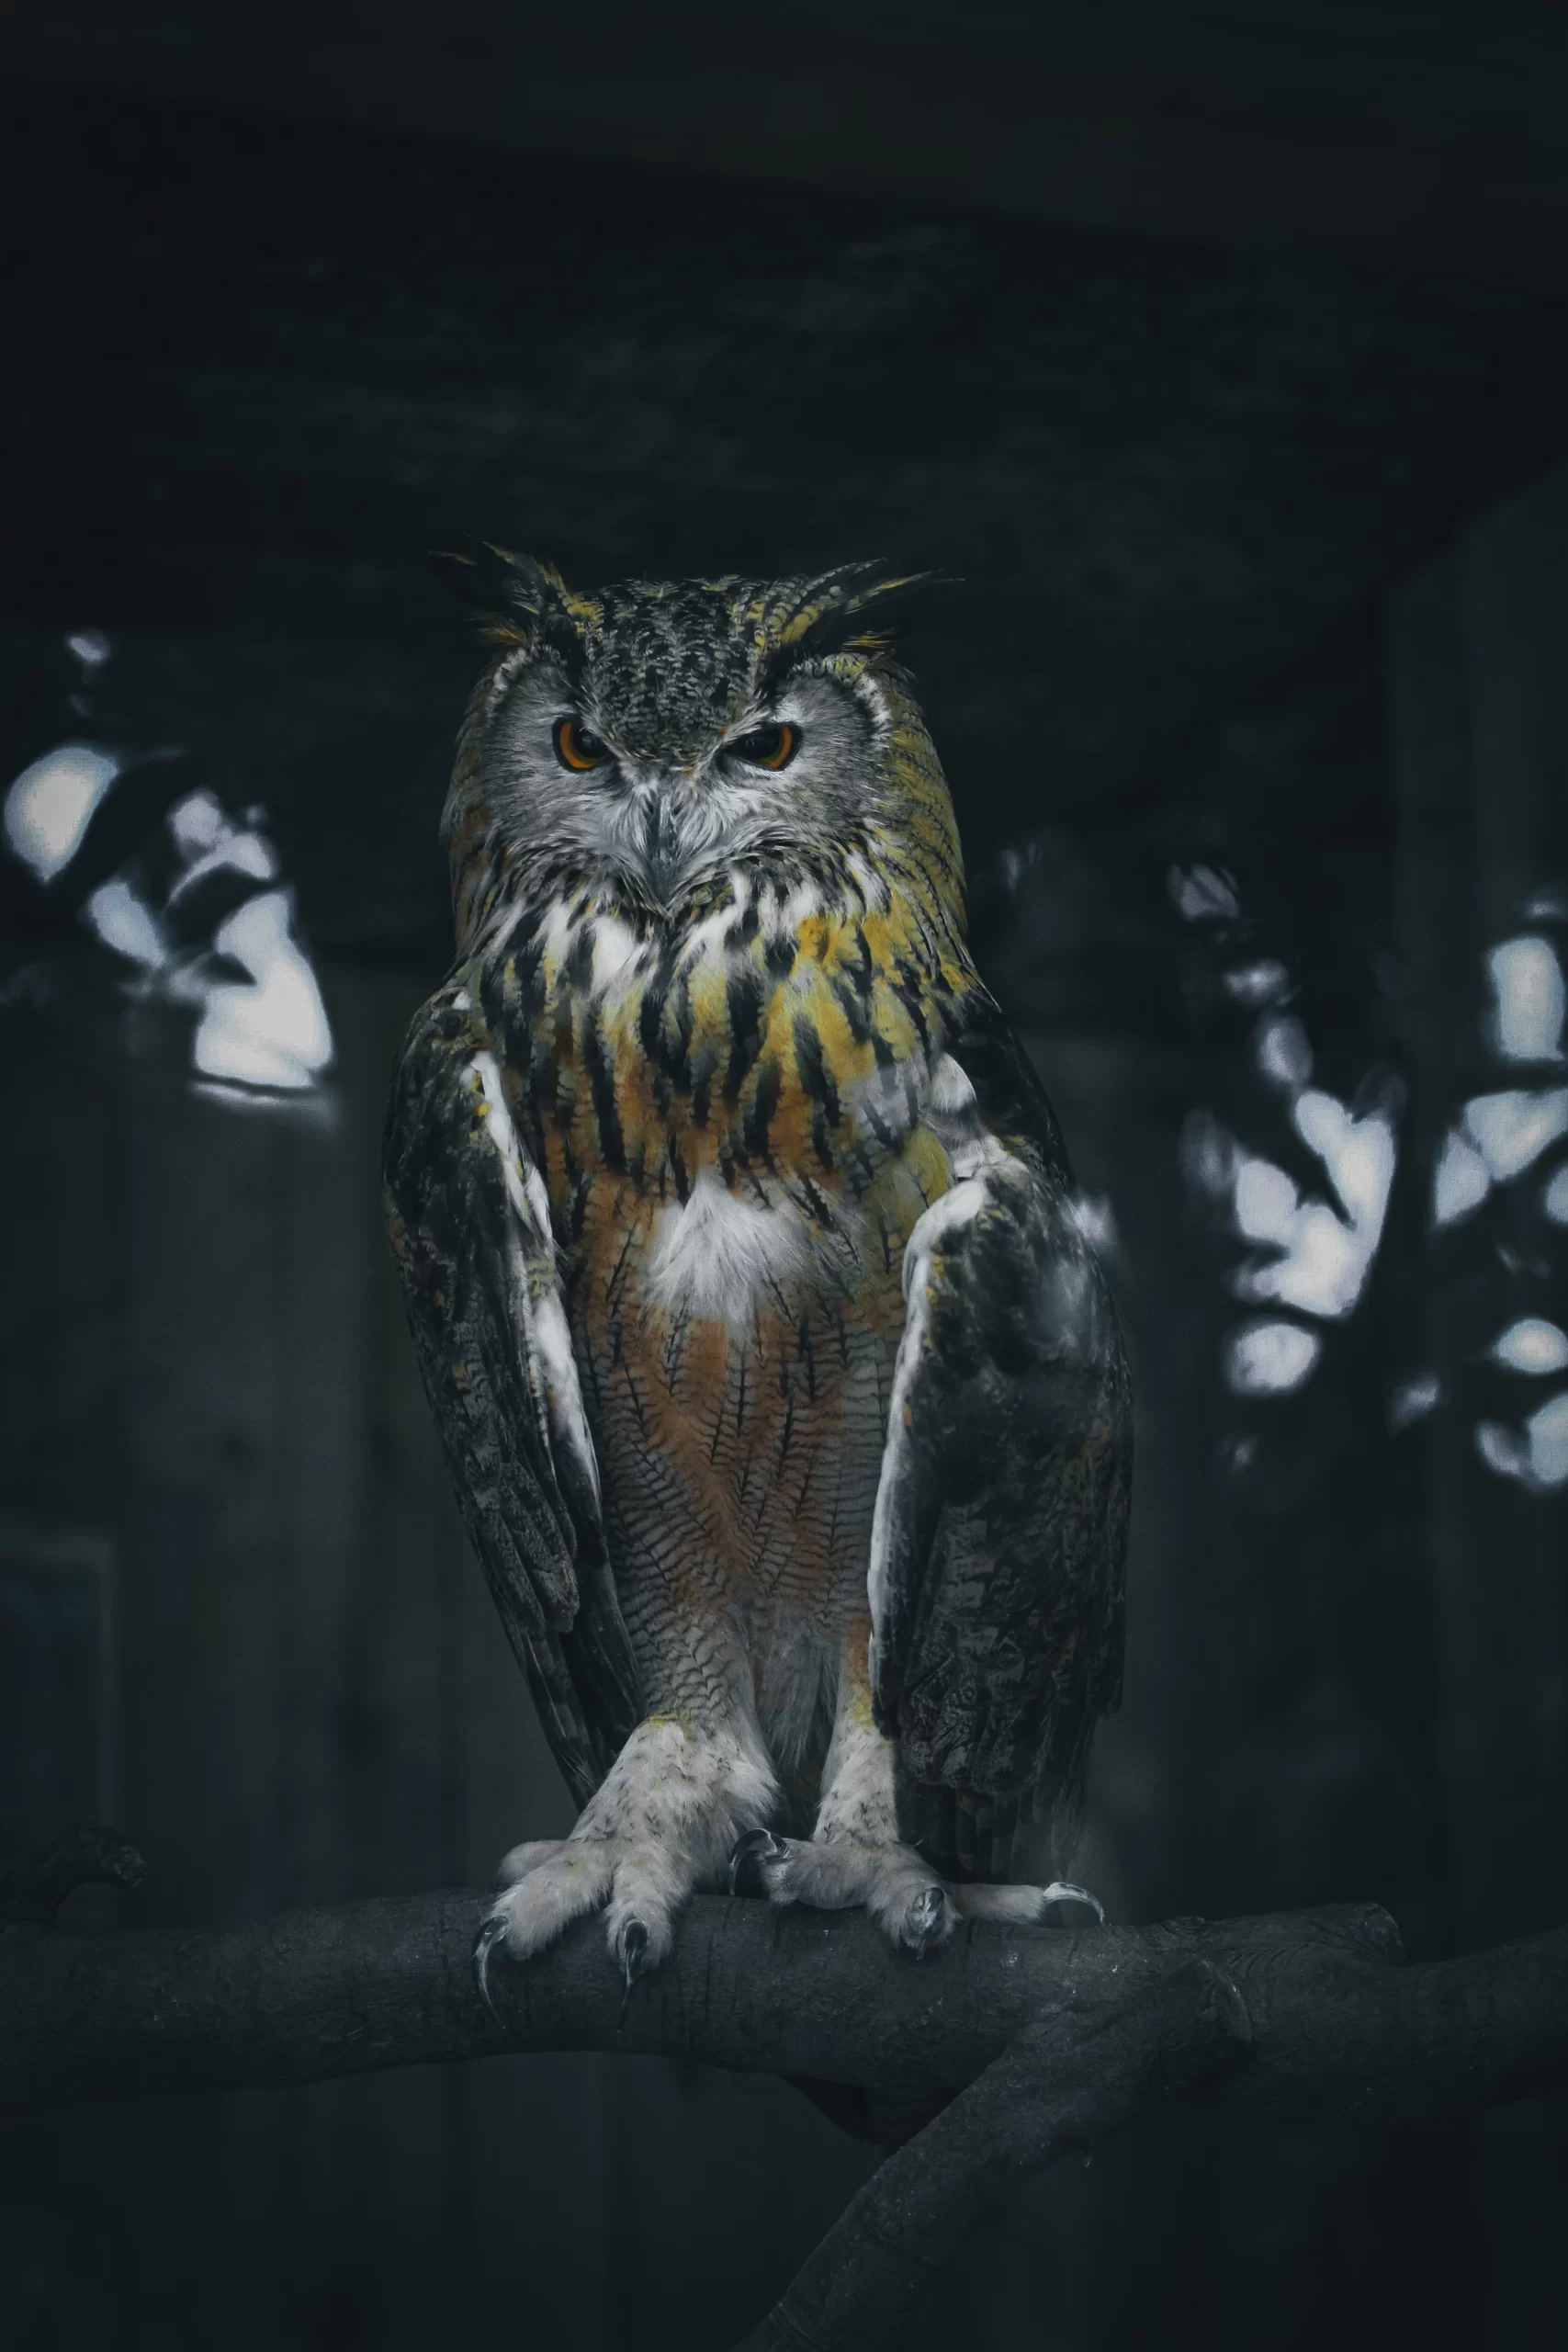 mehmet-turgut-Owl-unsplash